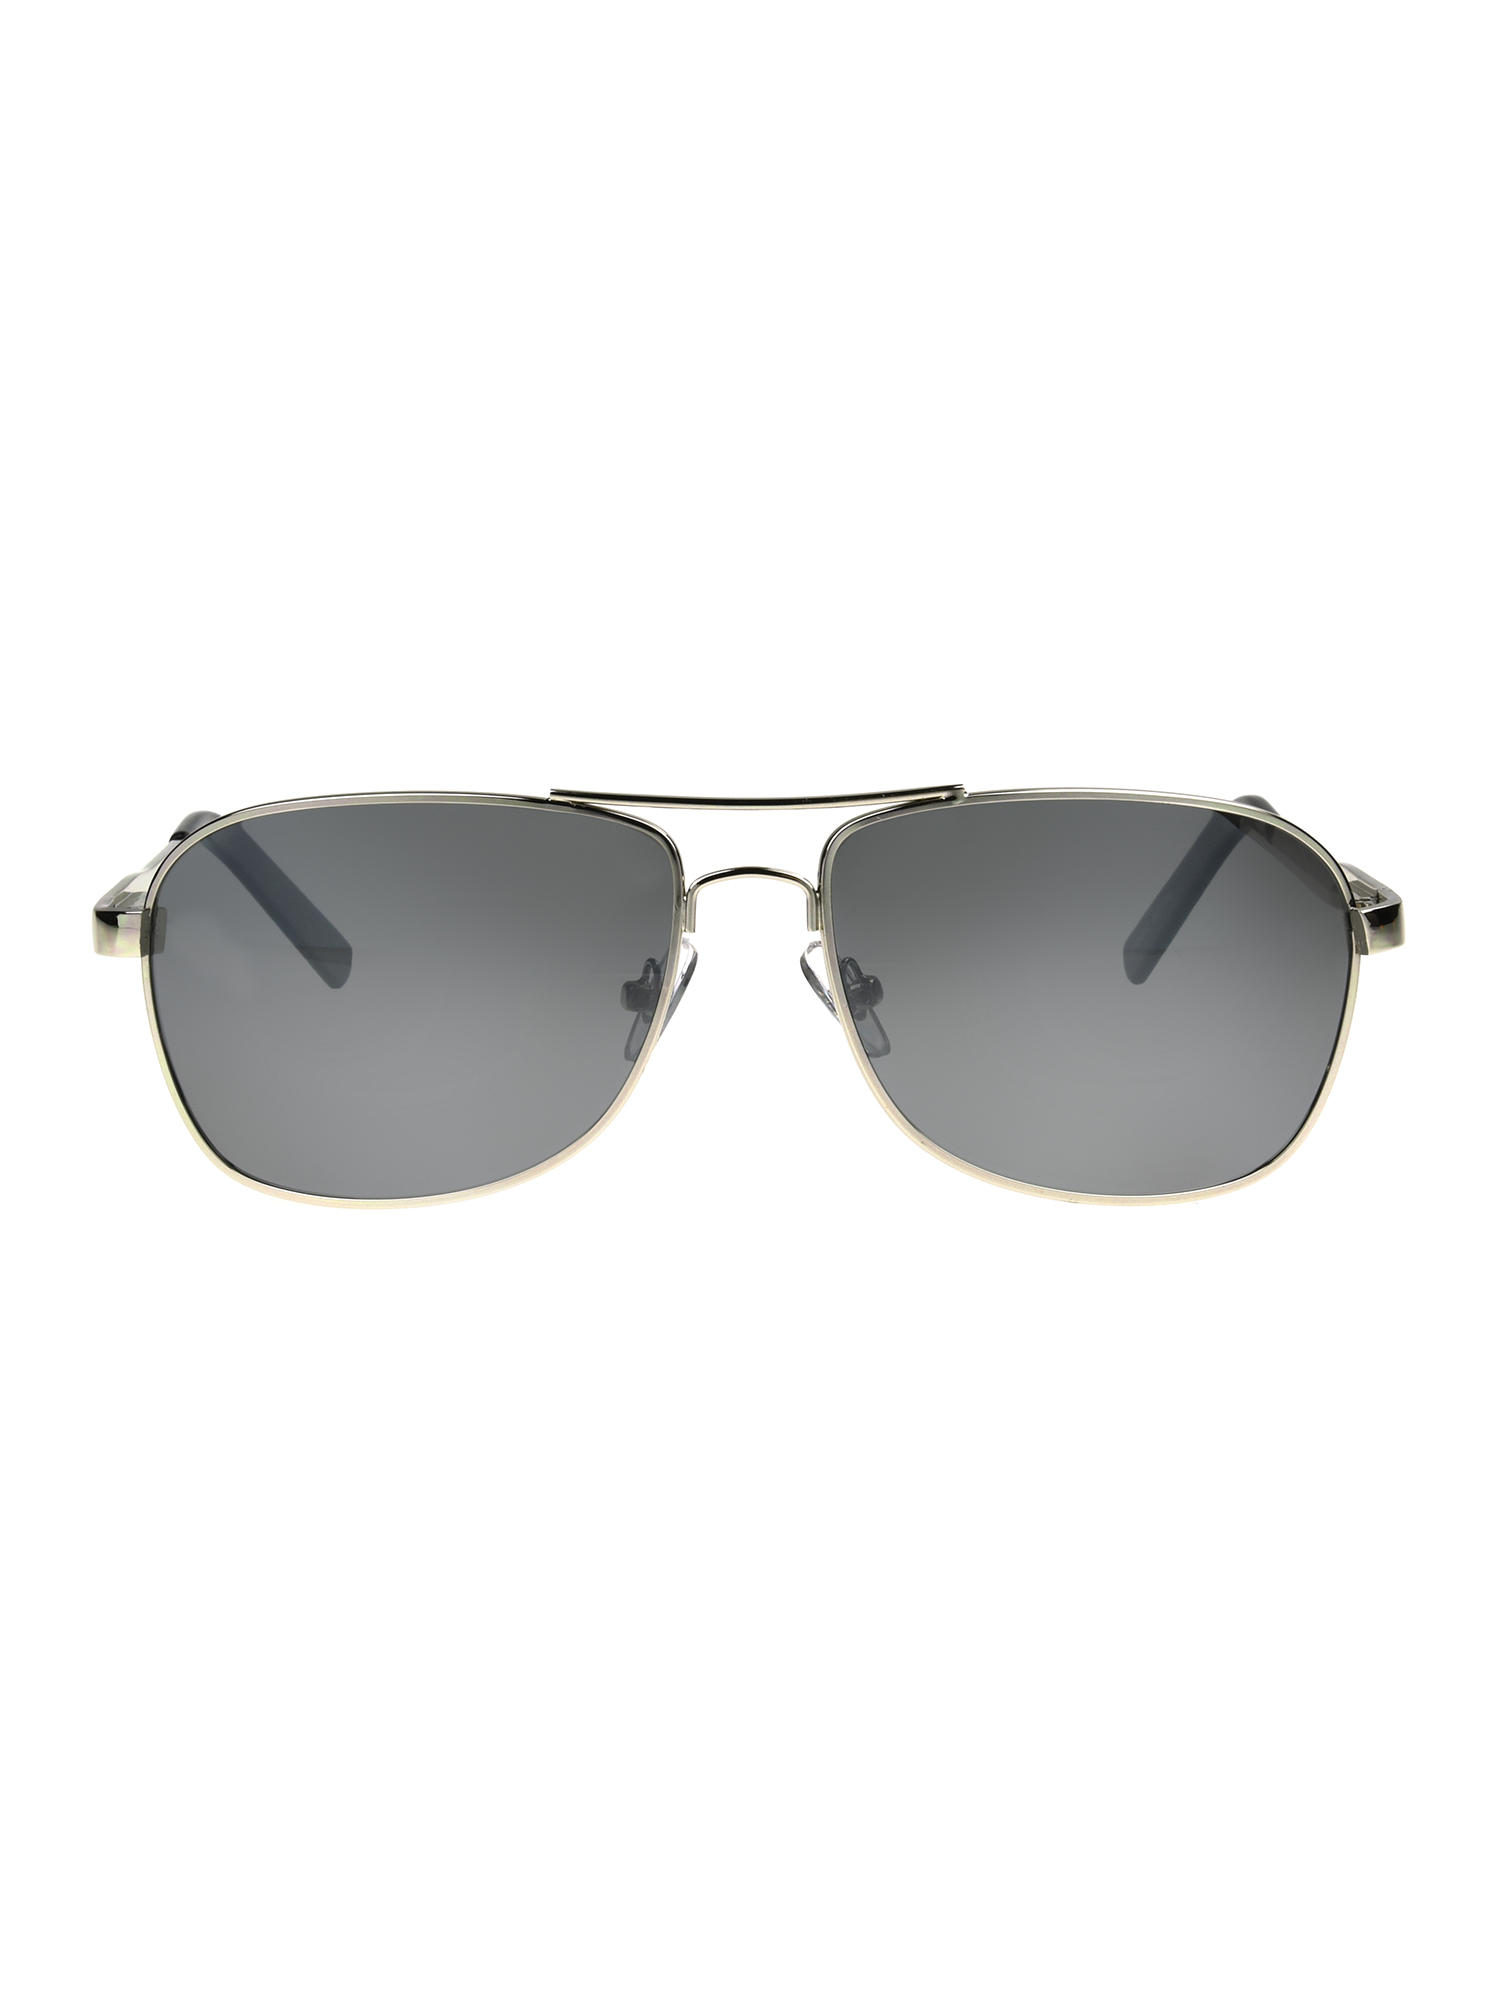 Foster Grant Men's Square Fashion Sunglasses Silver - image 1 of 7